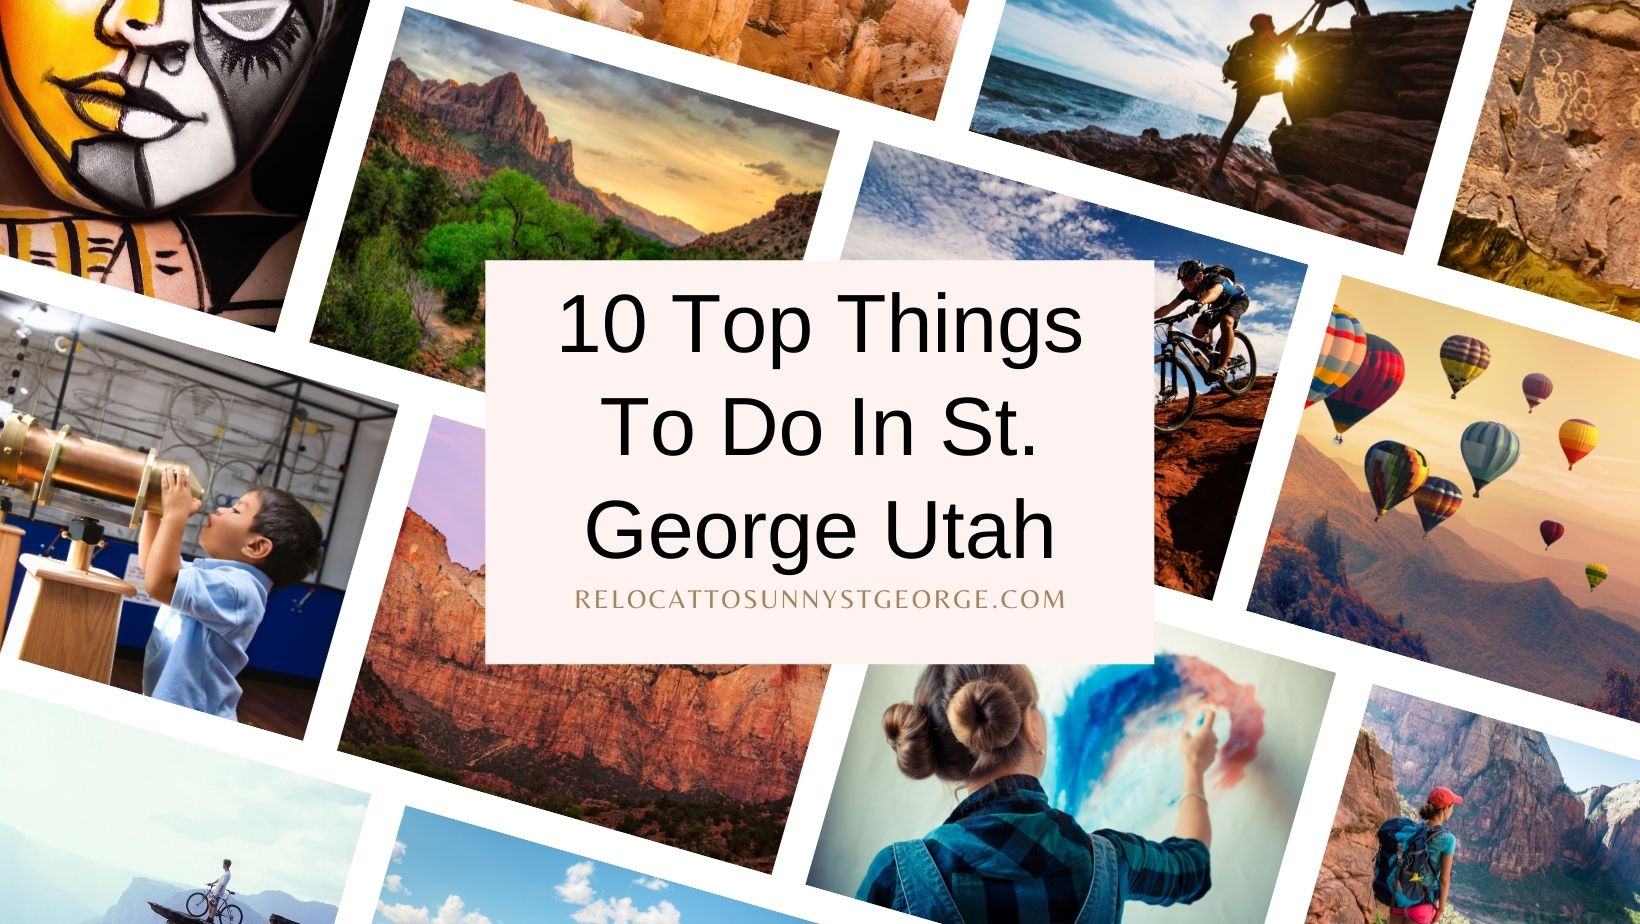 10 Top Things To Do In St. George Utah